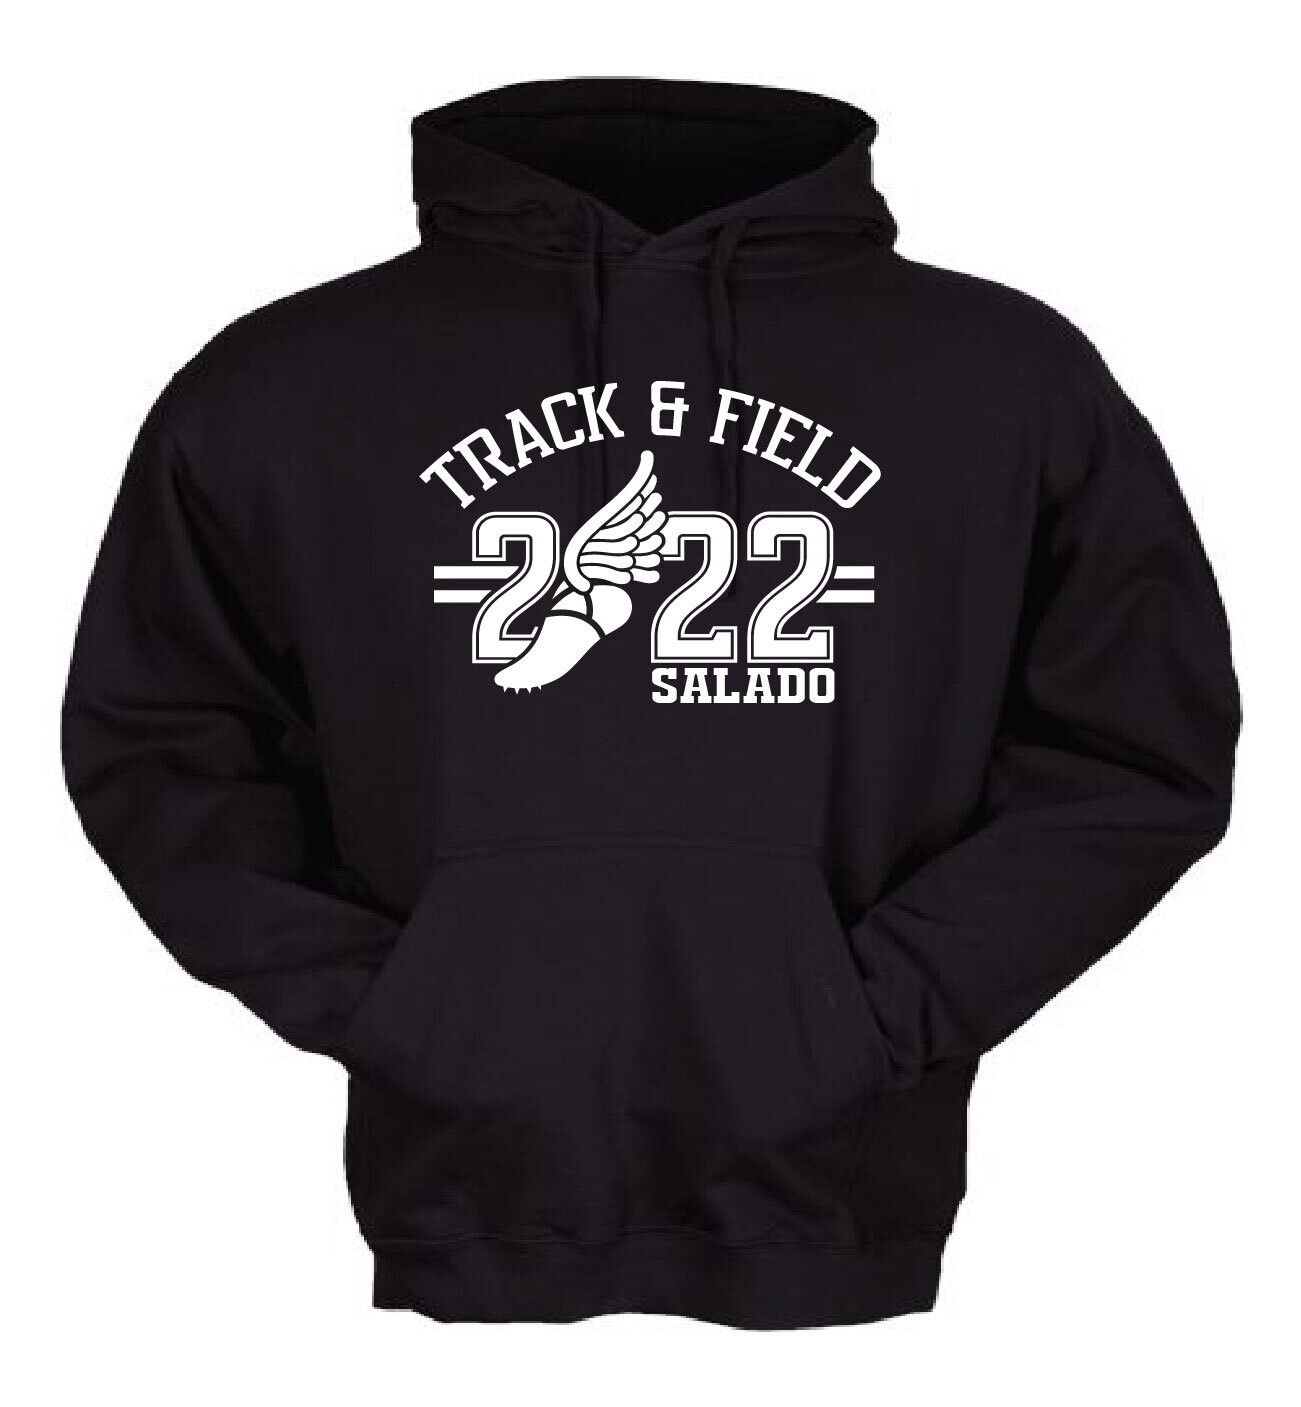 Salado Track & Field 2022 ADULT HOODIE